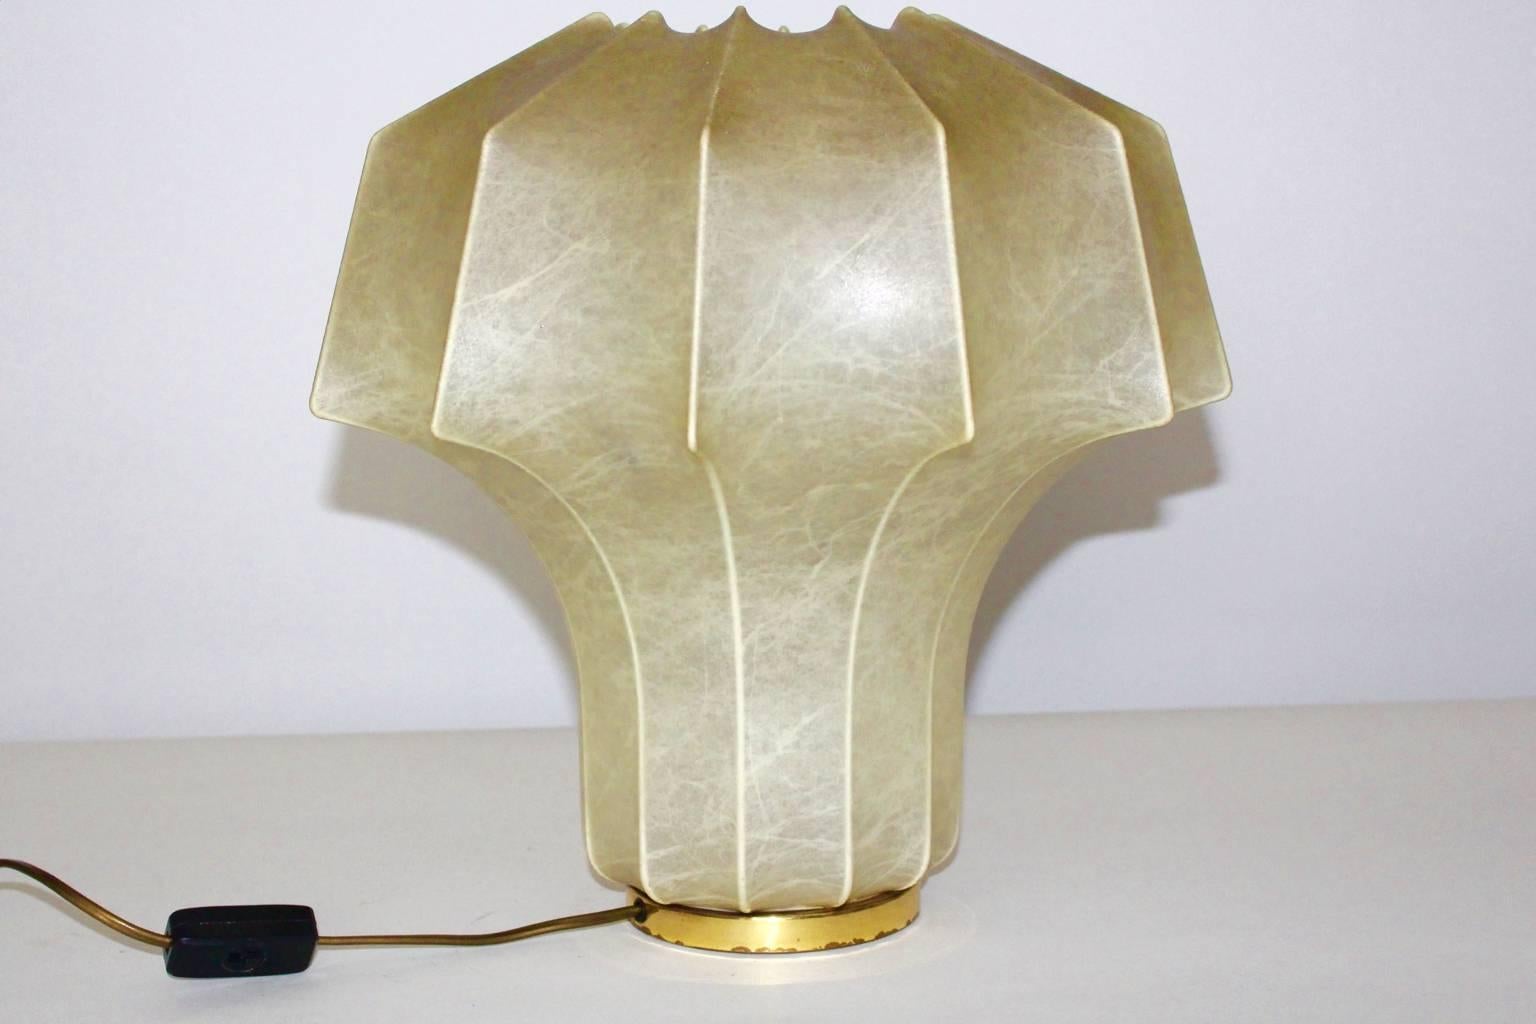 Lampe de table vintage biomorphe organique du milieu du siècle dernier dans le style d'Achille & Pier Giacomo Castiglioni, années 1960.
La lampe de table vintage de Linus Bopp, Limbach 1960s, Allemagne est étiquetée en dessous.
De plus, le cadre